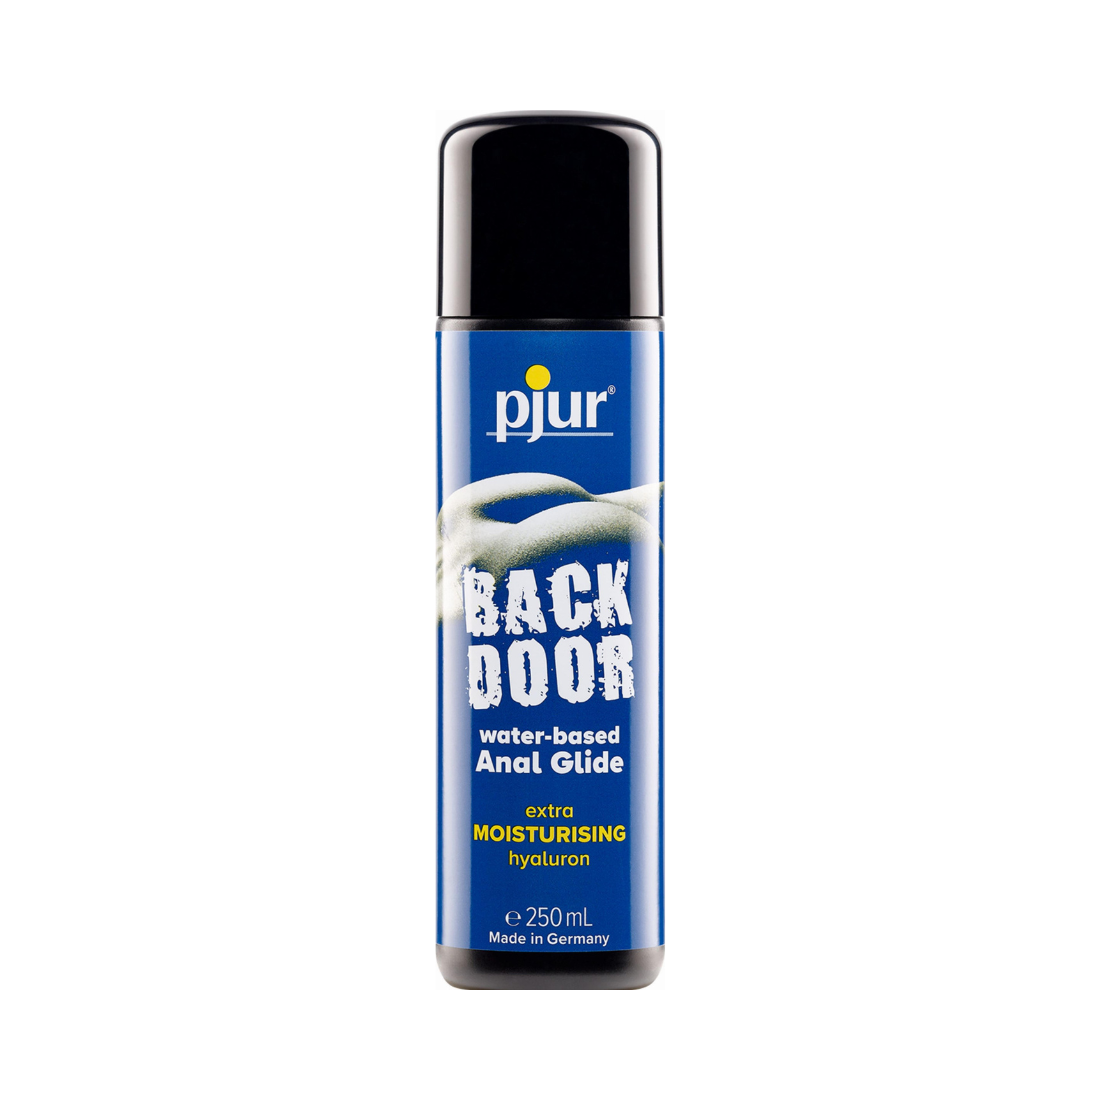 Blauw flesje Backdoor Water-based Anal Glide (glijmiddel op waterbasis) van het merk Pjur. Het flesje bevat 250ml. Perfect voor gay mannen en te koop bij Flavourez!